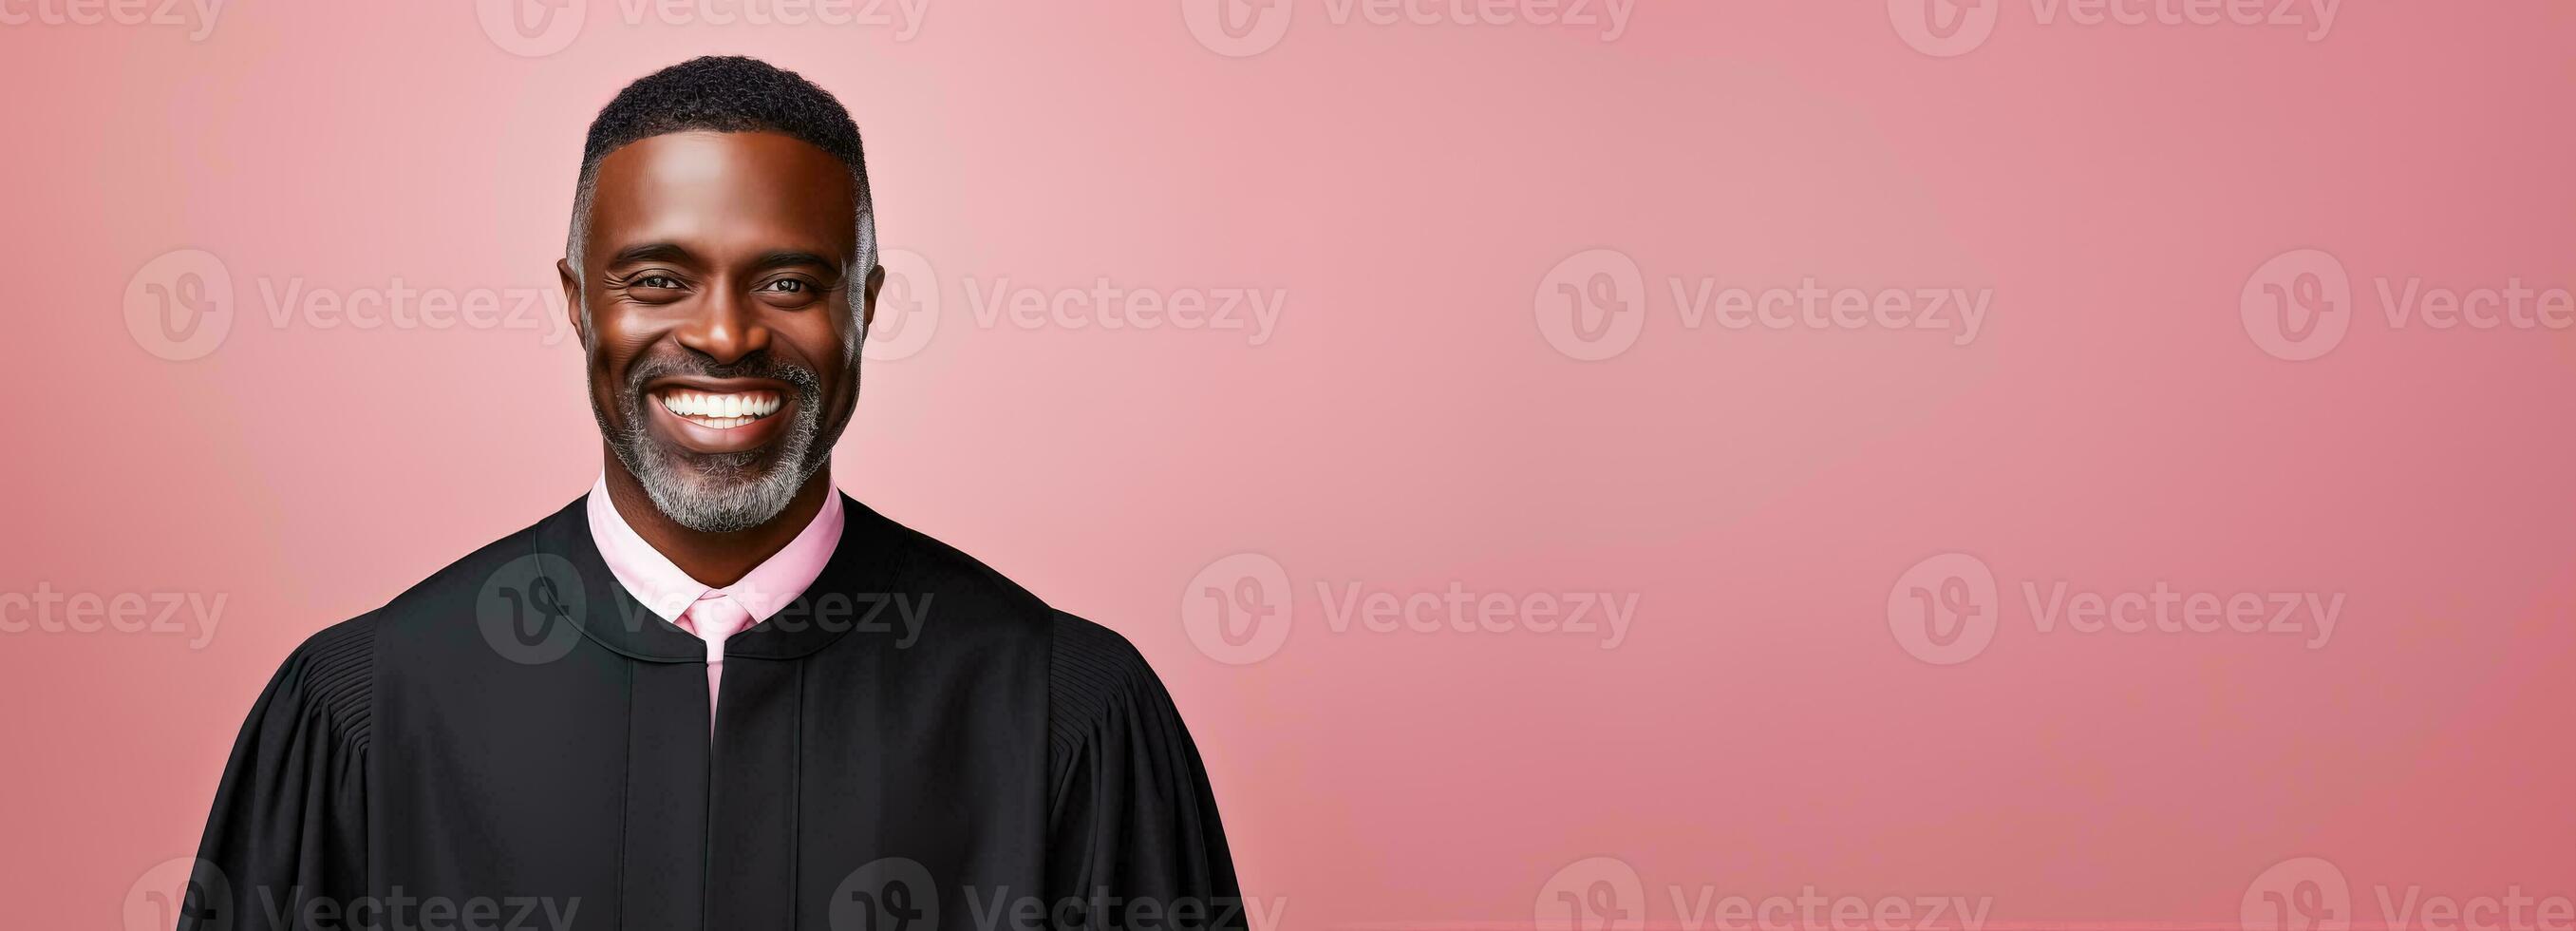 framgångsrik svart manlig bedöma leende på de kamera isolerat på pastell bakgrund foto